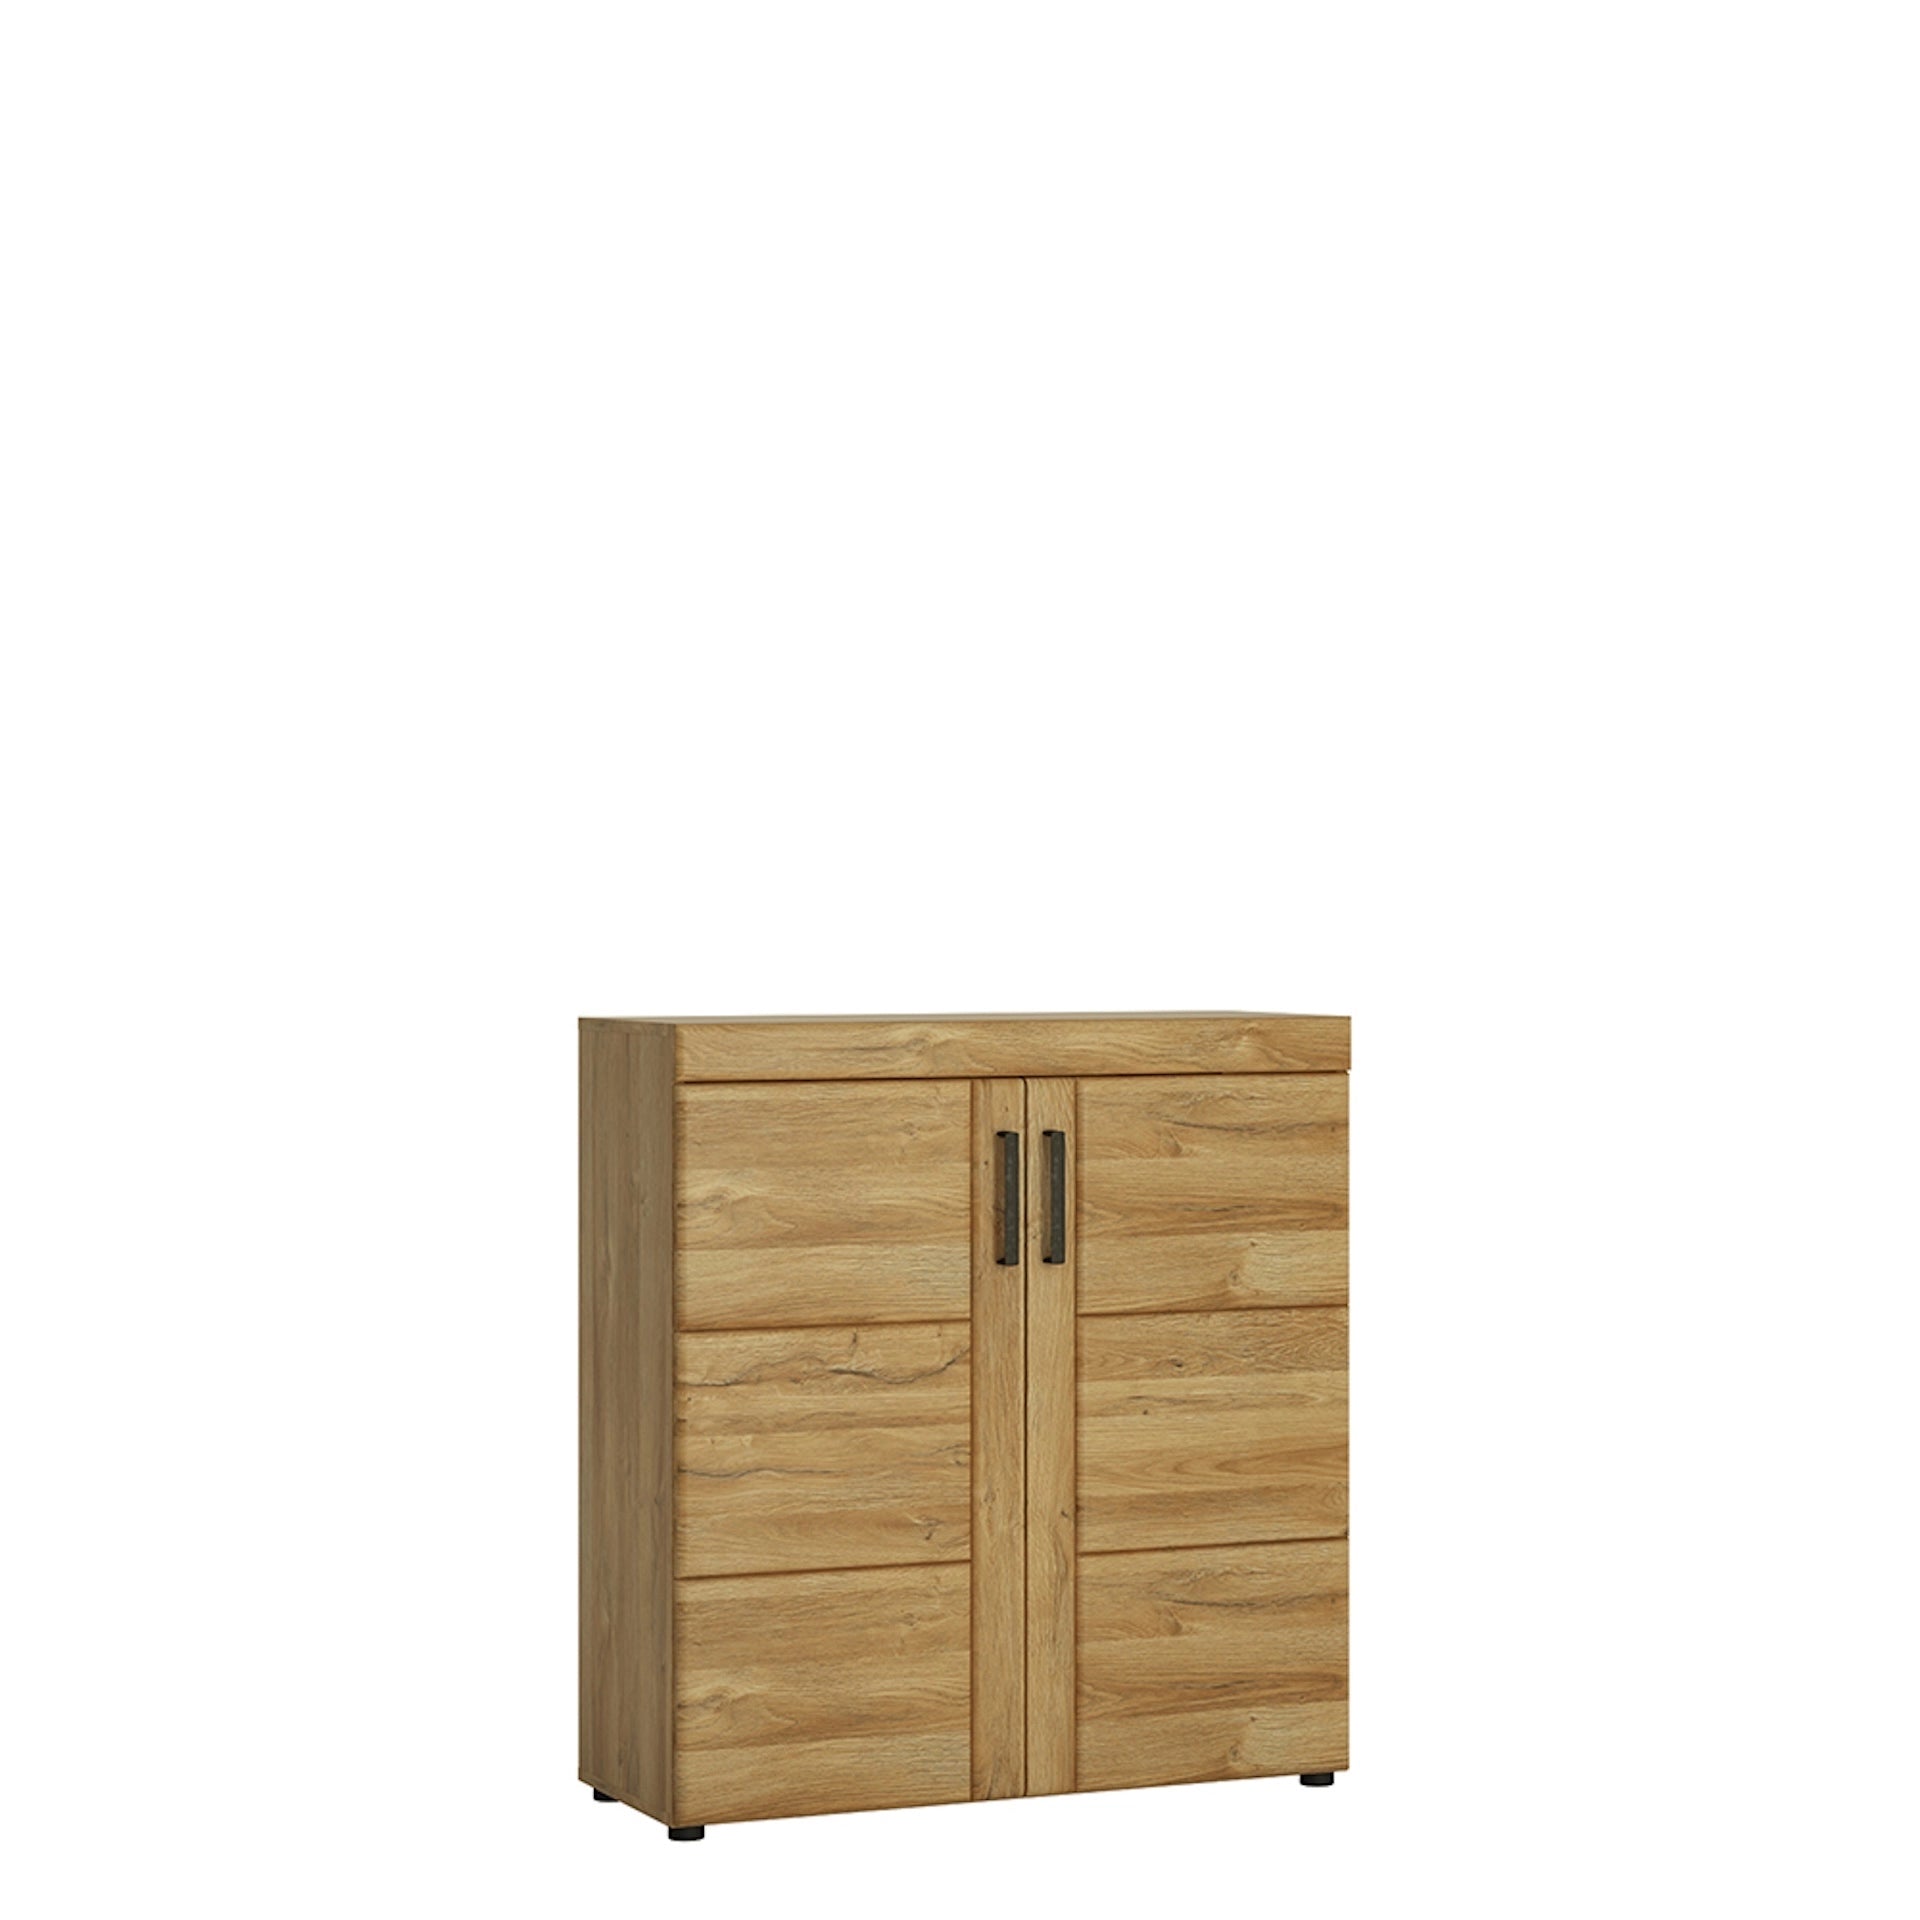 Furniture To Go Cortina 2 Door Shoe Cabinet in Grandson Oak